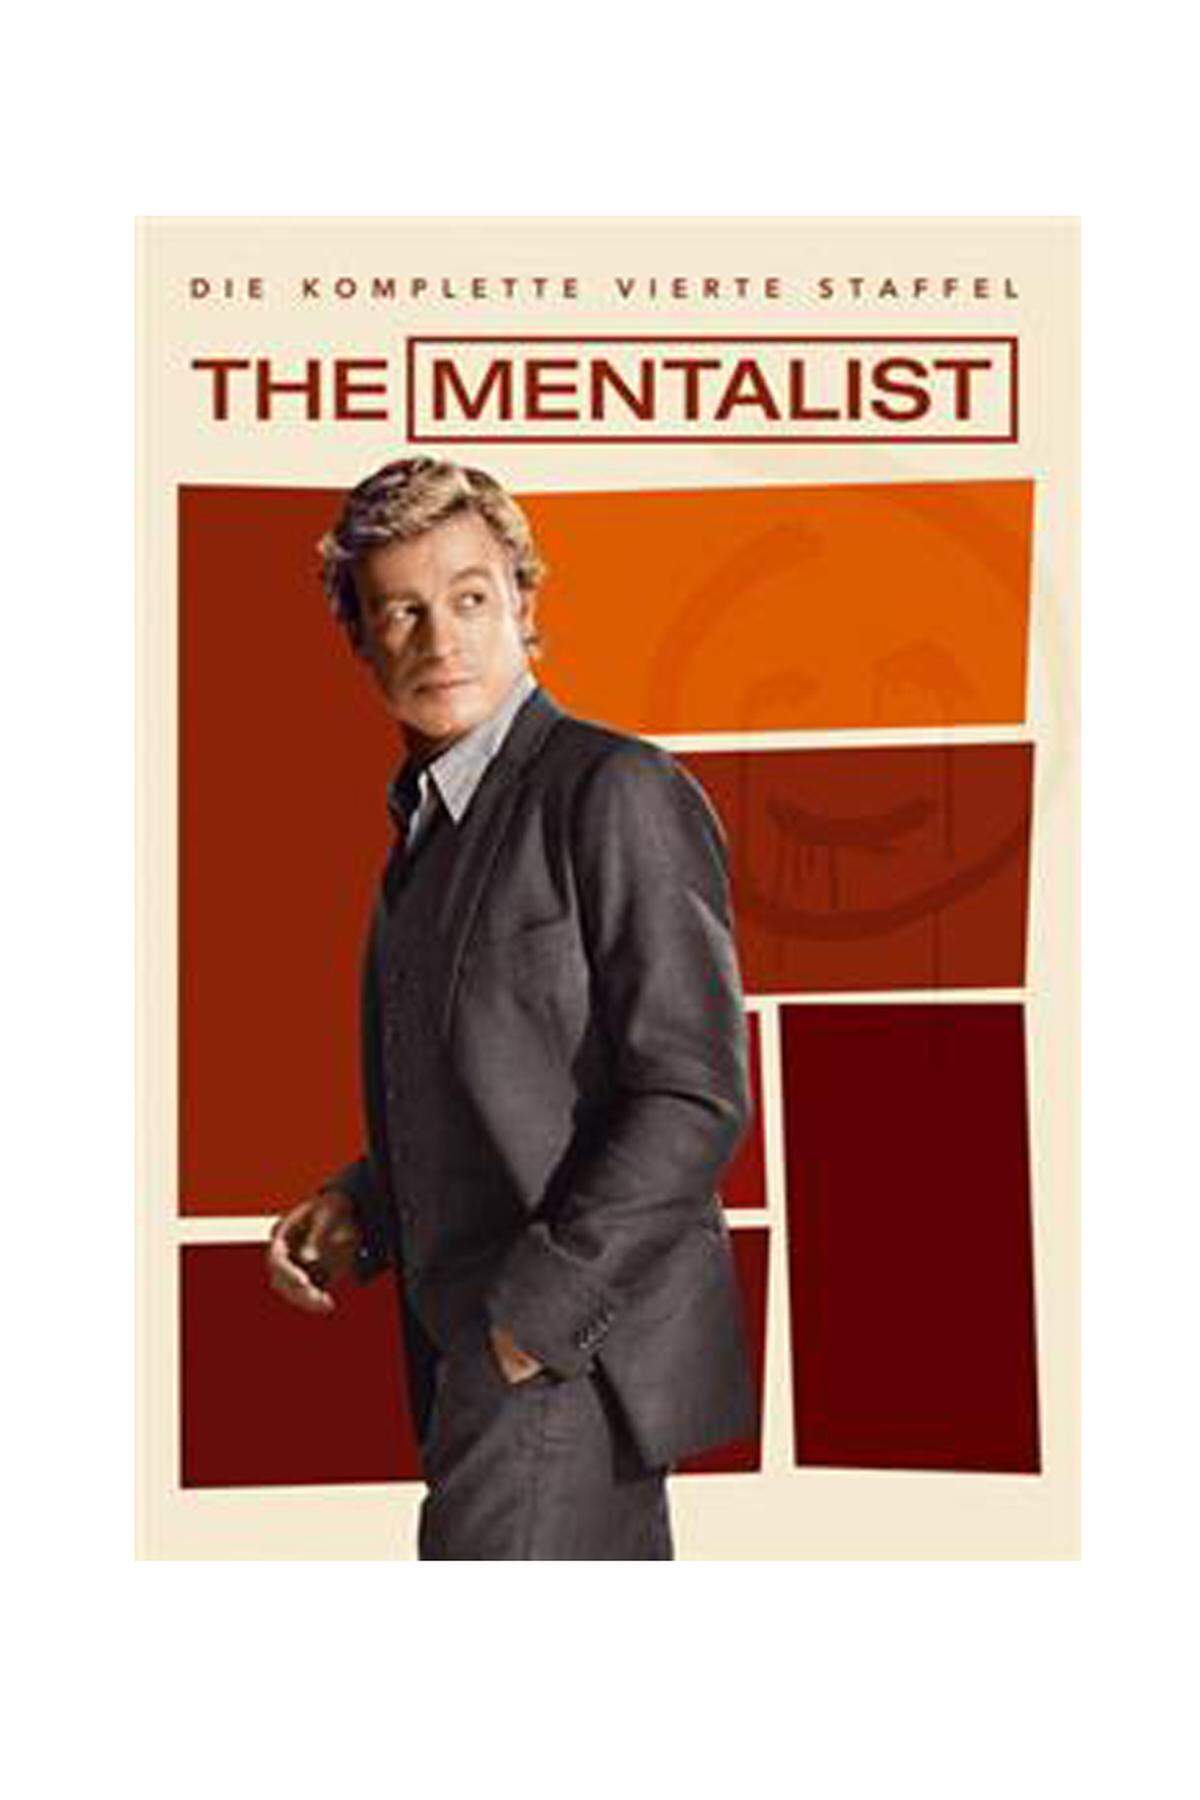 Für Serien-Junkies: DVD-Staffel "The Mentalist", erhältlich etwa bei Thalia um 39,99 Euro.